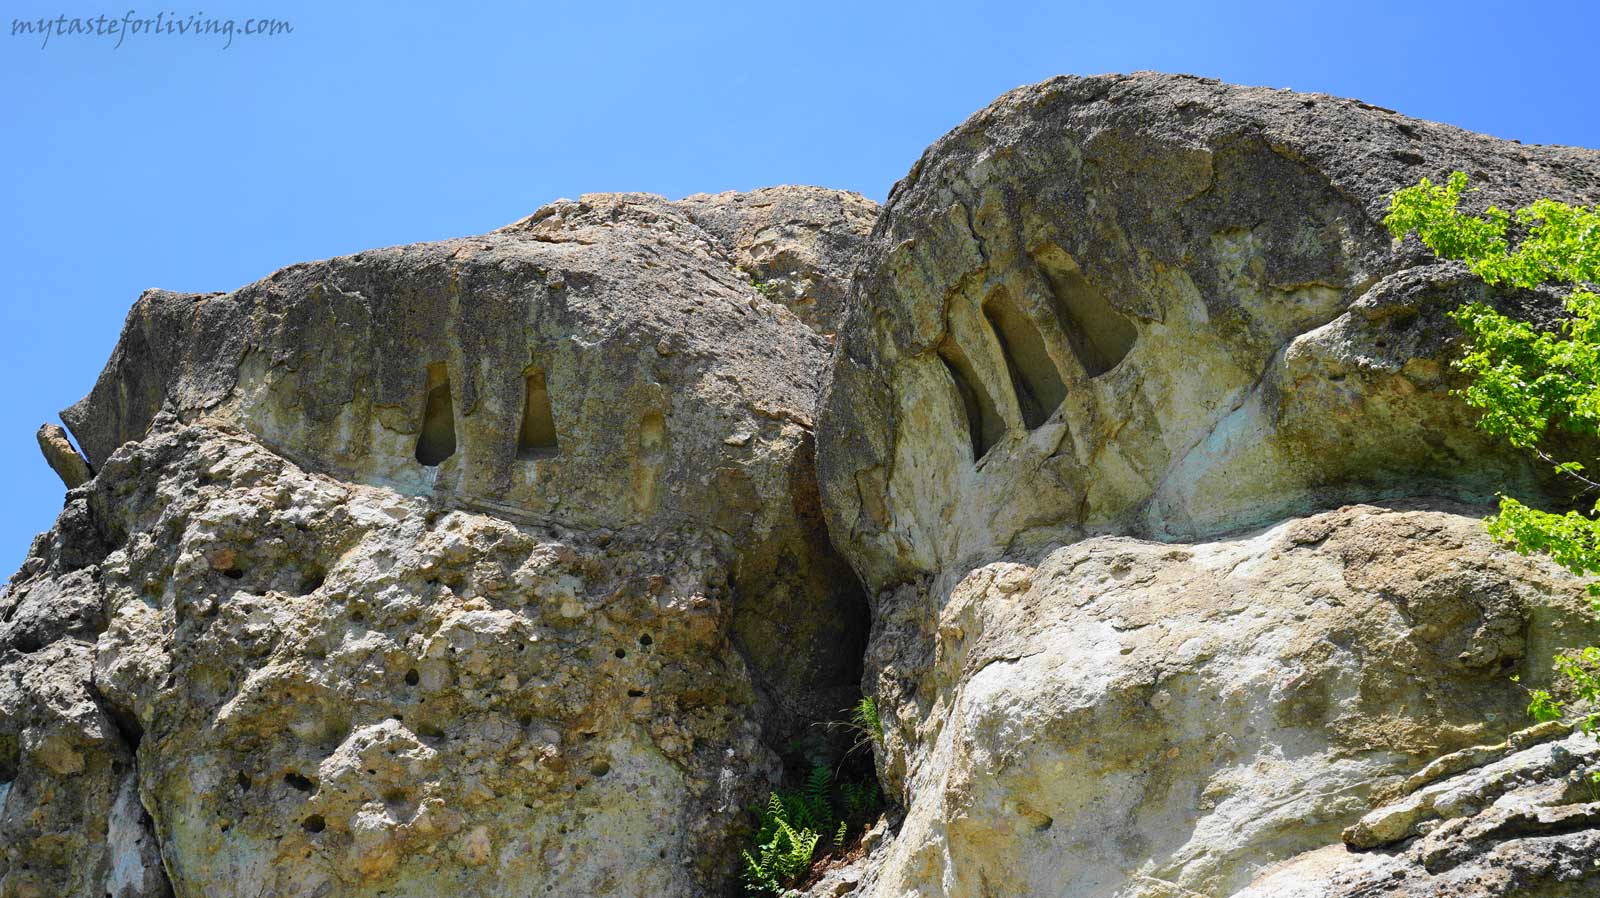 Тракийските скални светилища с издялани в тях мистериозни трапецовидни скални ниши са характерни за Източните Родопи. В горите над село Ночево е пълно с подобни ниши, малки пещери (като Коджа ин) и шарапани.